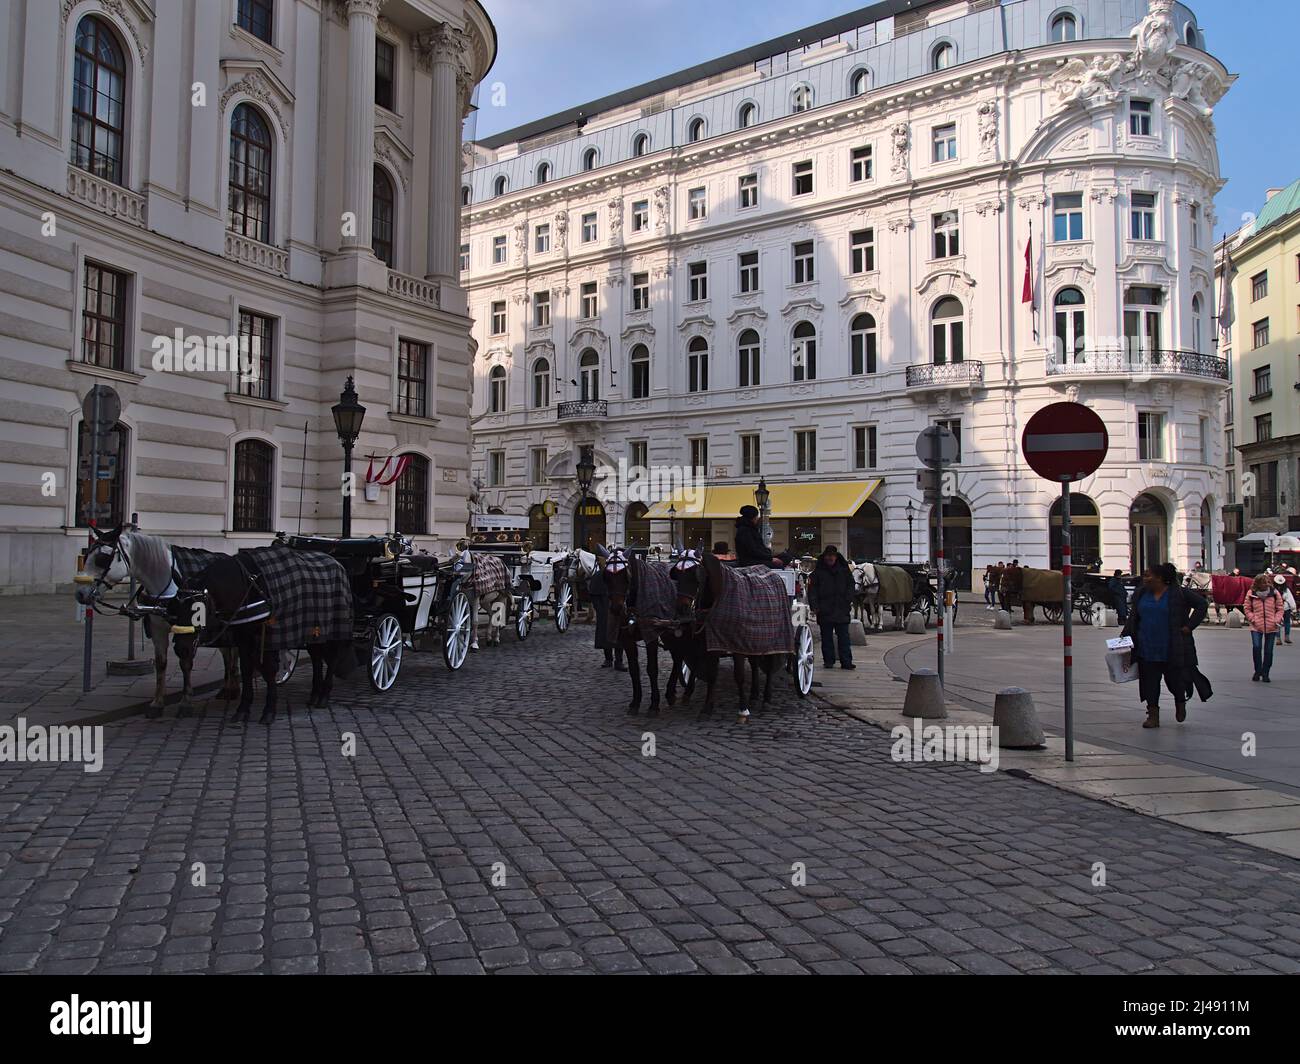 Geschäftige Szene am berühmten Michaelerplatz im historischen Zentrum von Wien, Österreich mit Pferdekutschen, die auf Touristen warten. Stockfoto